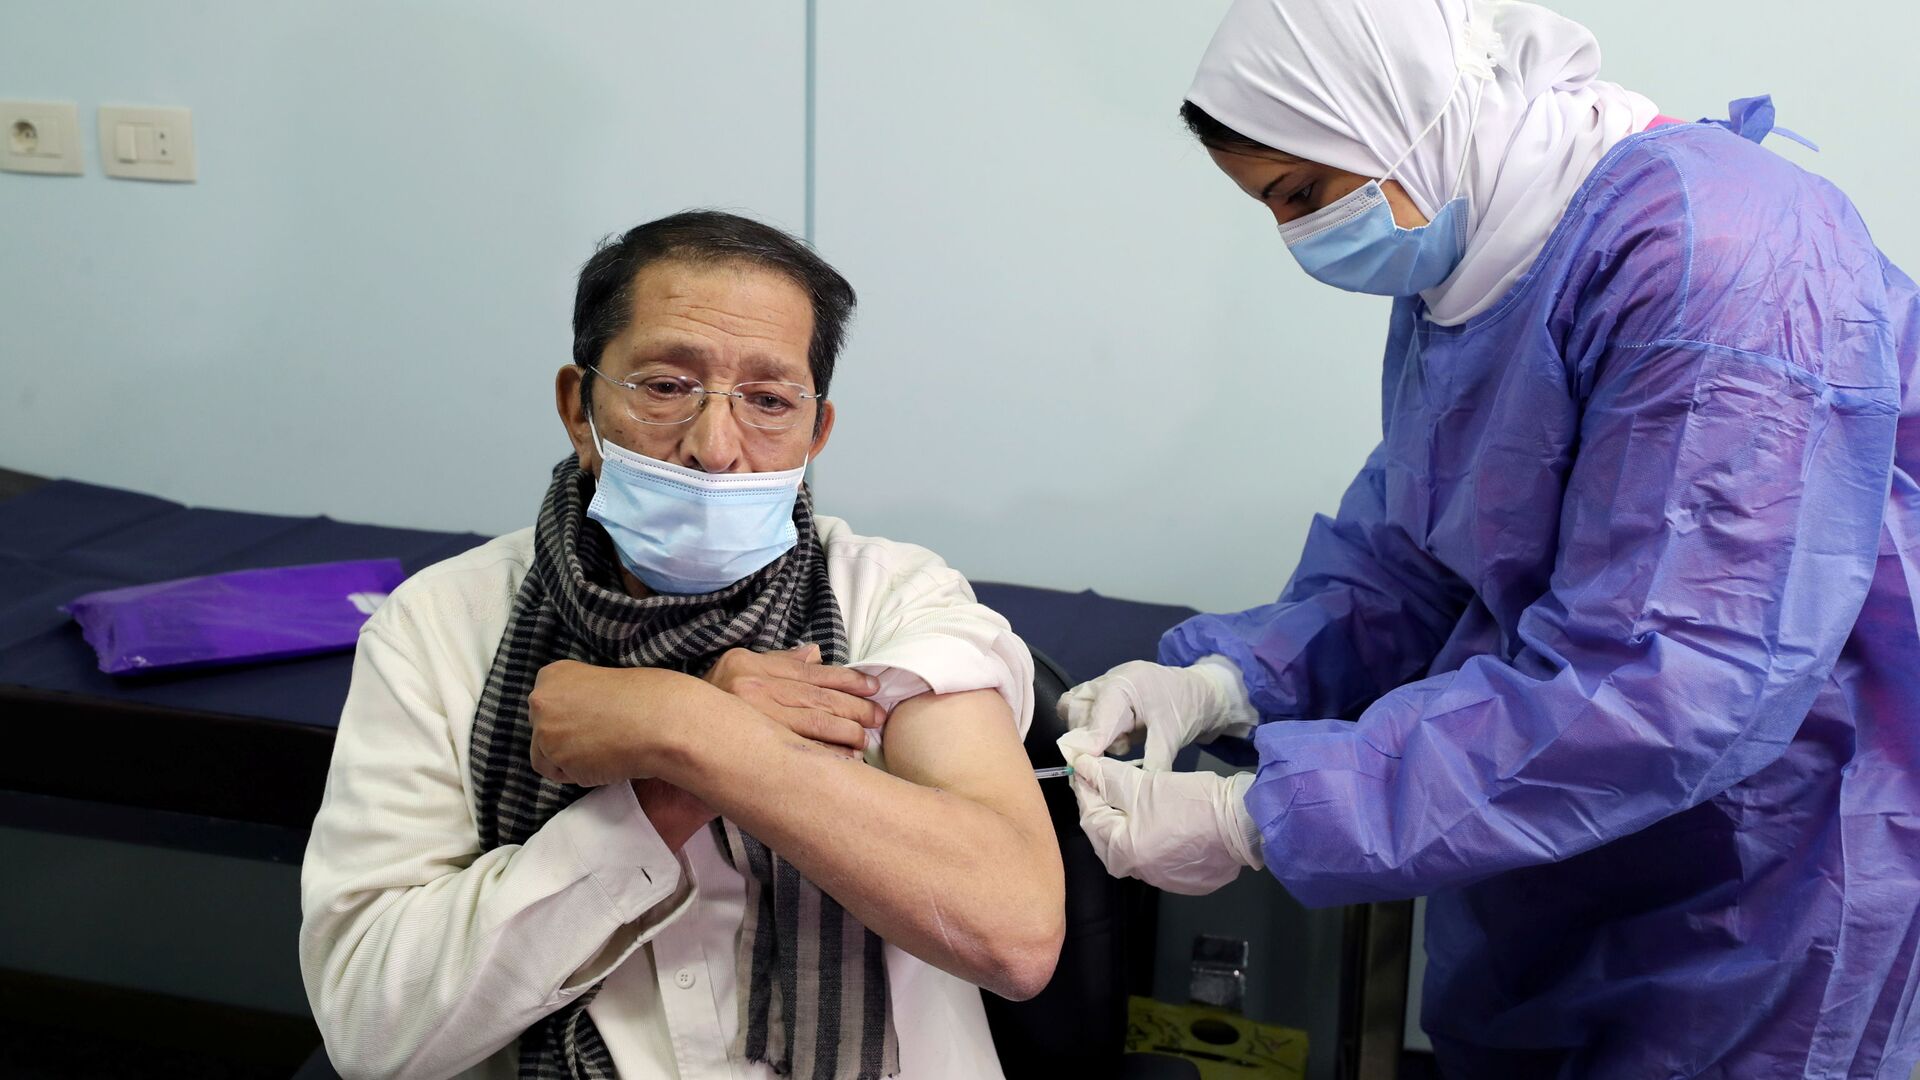 بدء تطعيم واسع النطاق في مصر ضد فيروس كورونا (كوفيد-19)، القاهرة، 4 مارس 2021 - سبوتنيك عربي, 1920, 18.09.2021